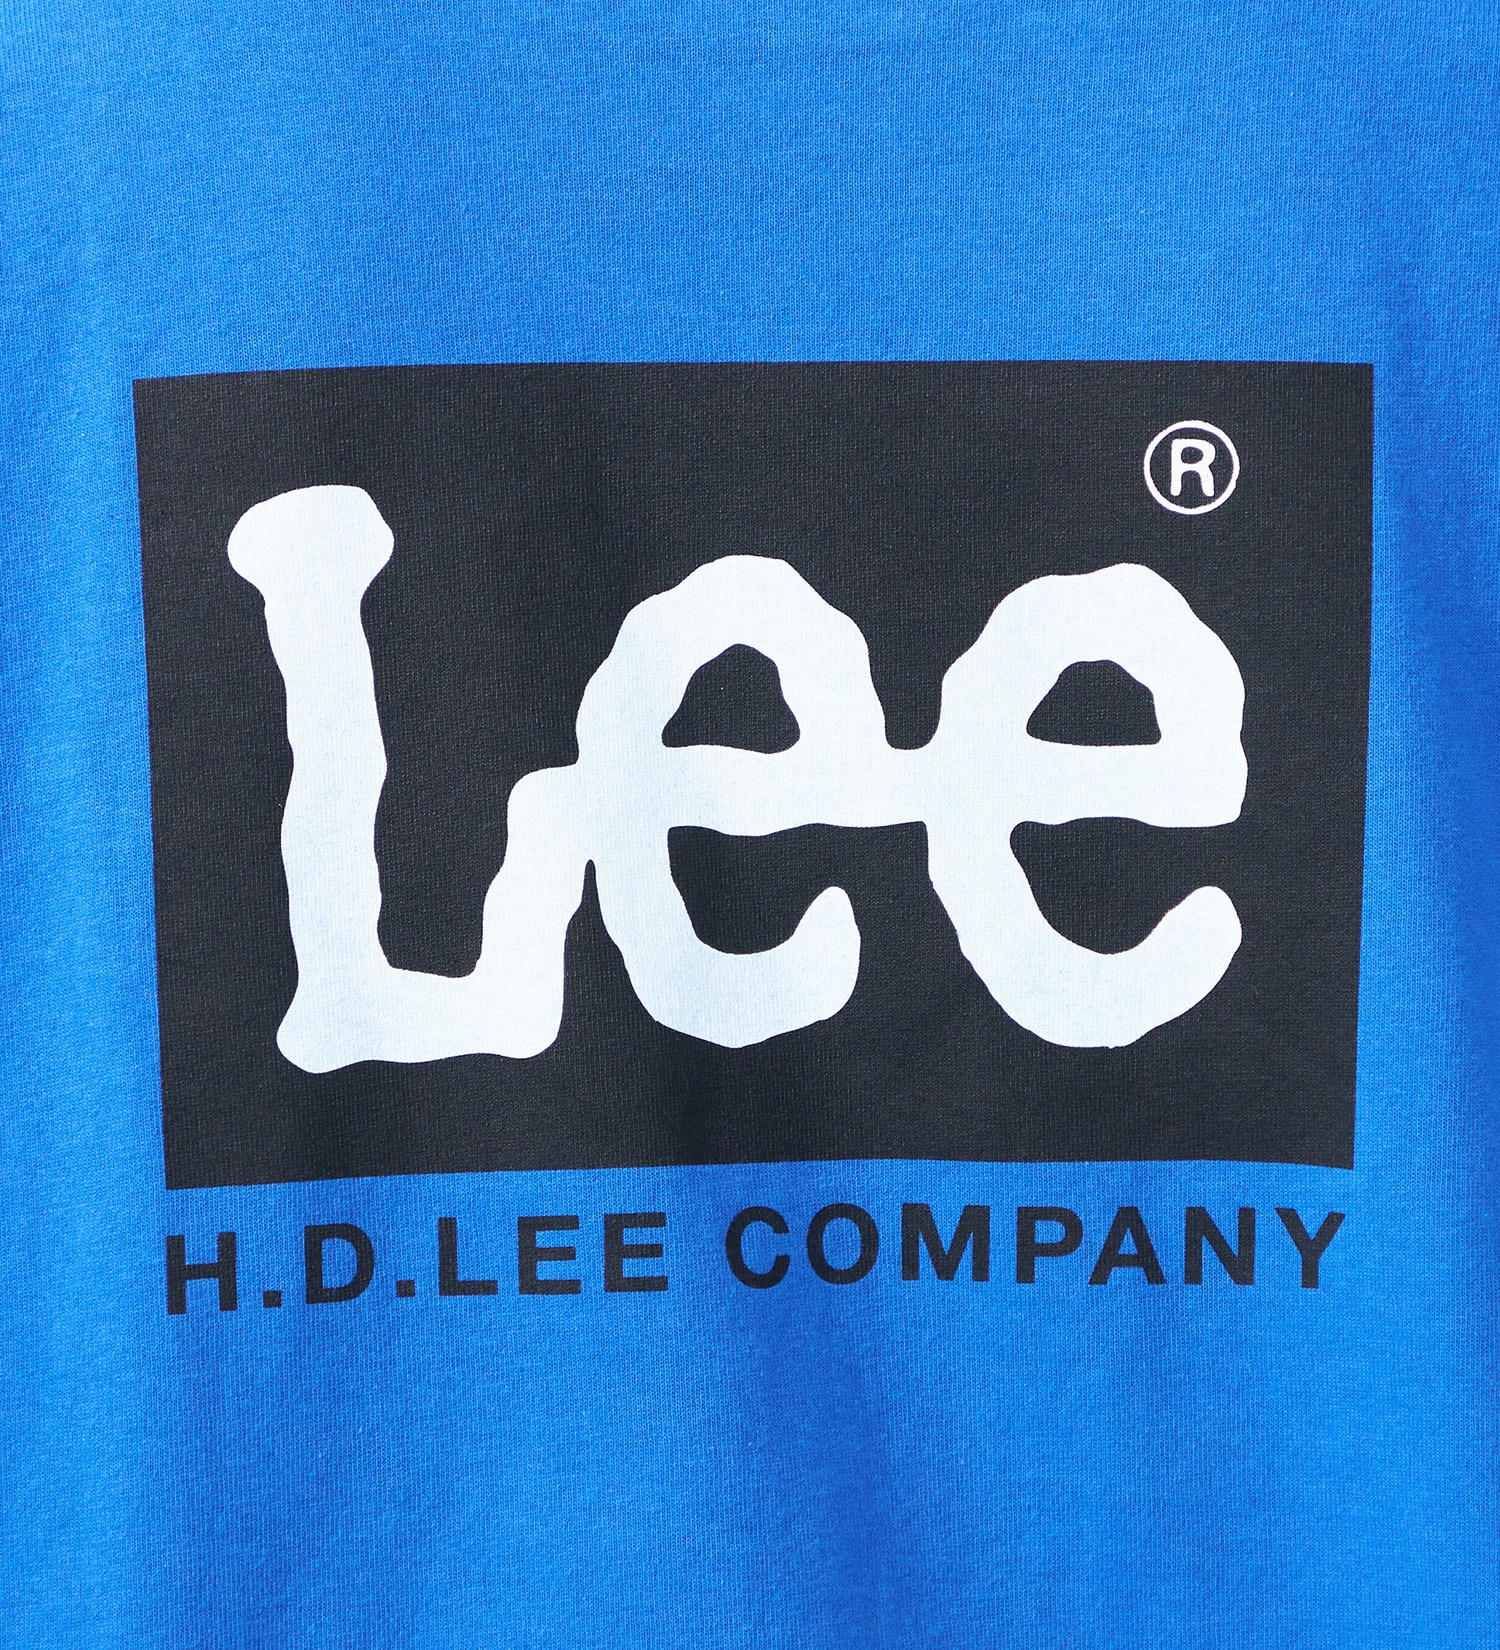 Lee(リー)のLee バックプリント ショートスリーブTee|トップス/Tシャツ/カットソー/メンズ|ブルー